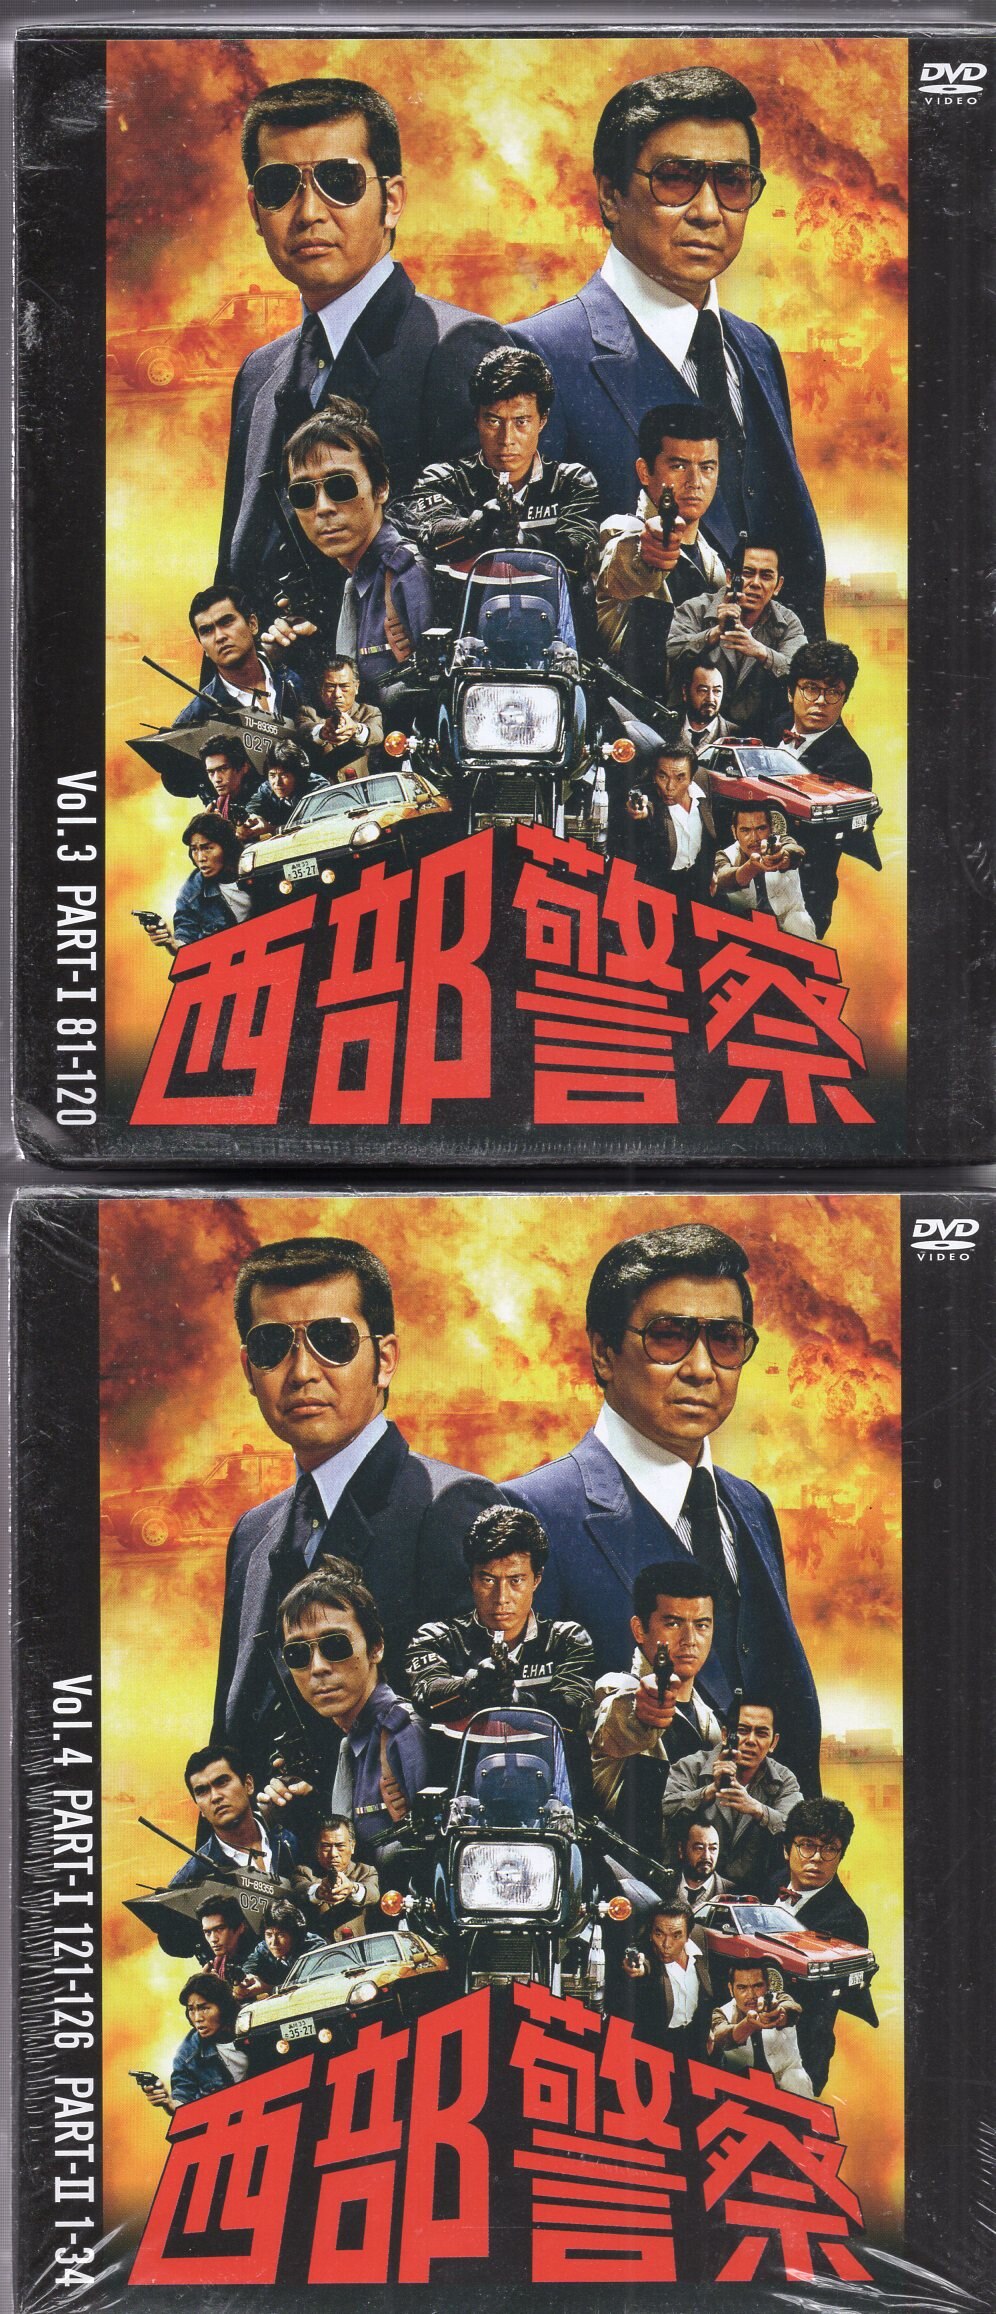 ドラマDVD 西部警察 40th Anniversary コンプリートDVDシリーズ全6巻